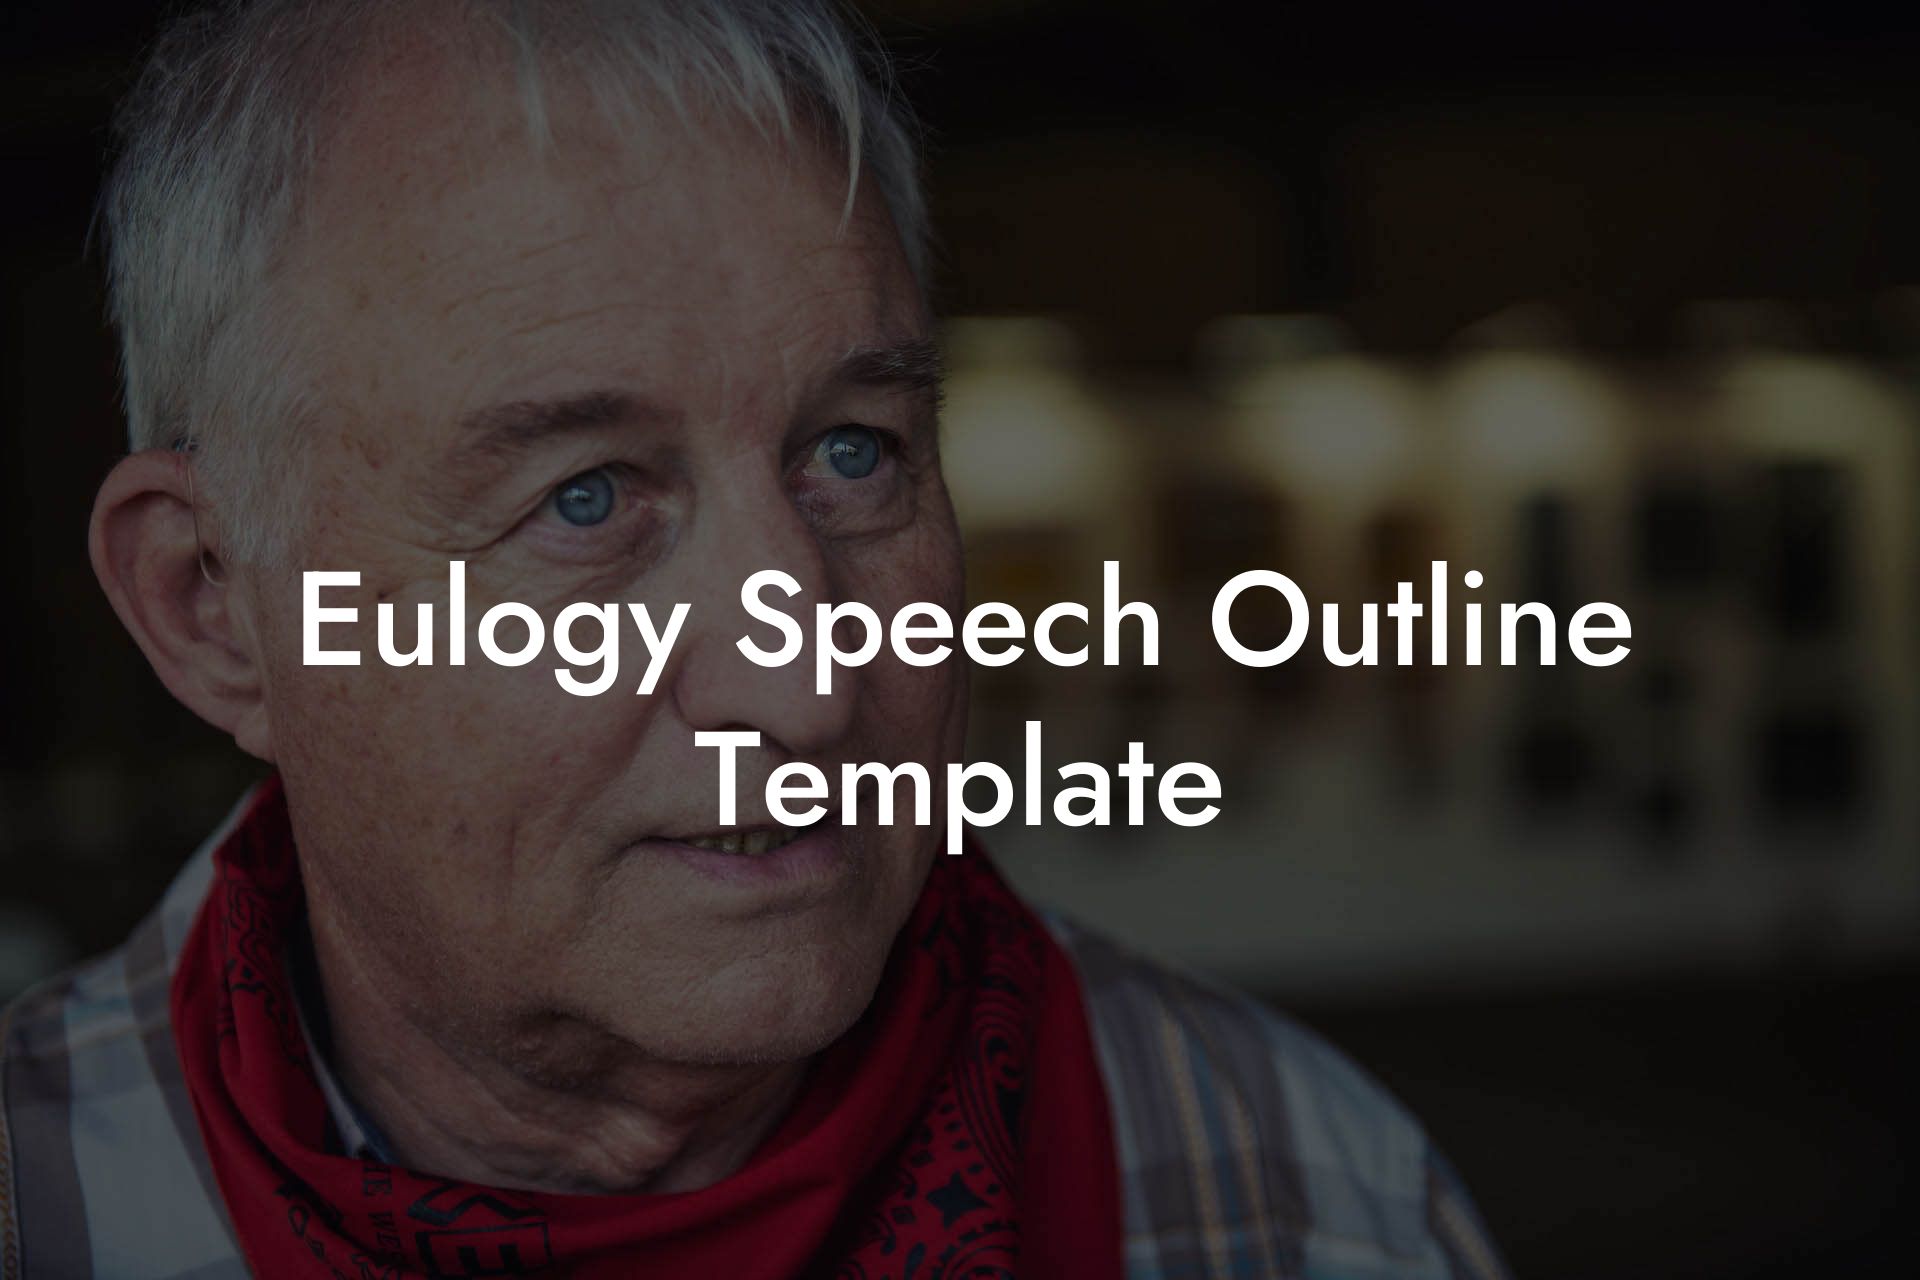 Eulogy Speech Outline Template